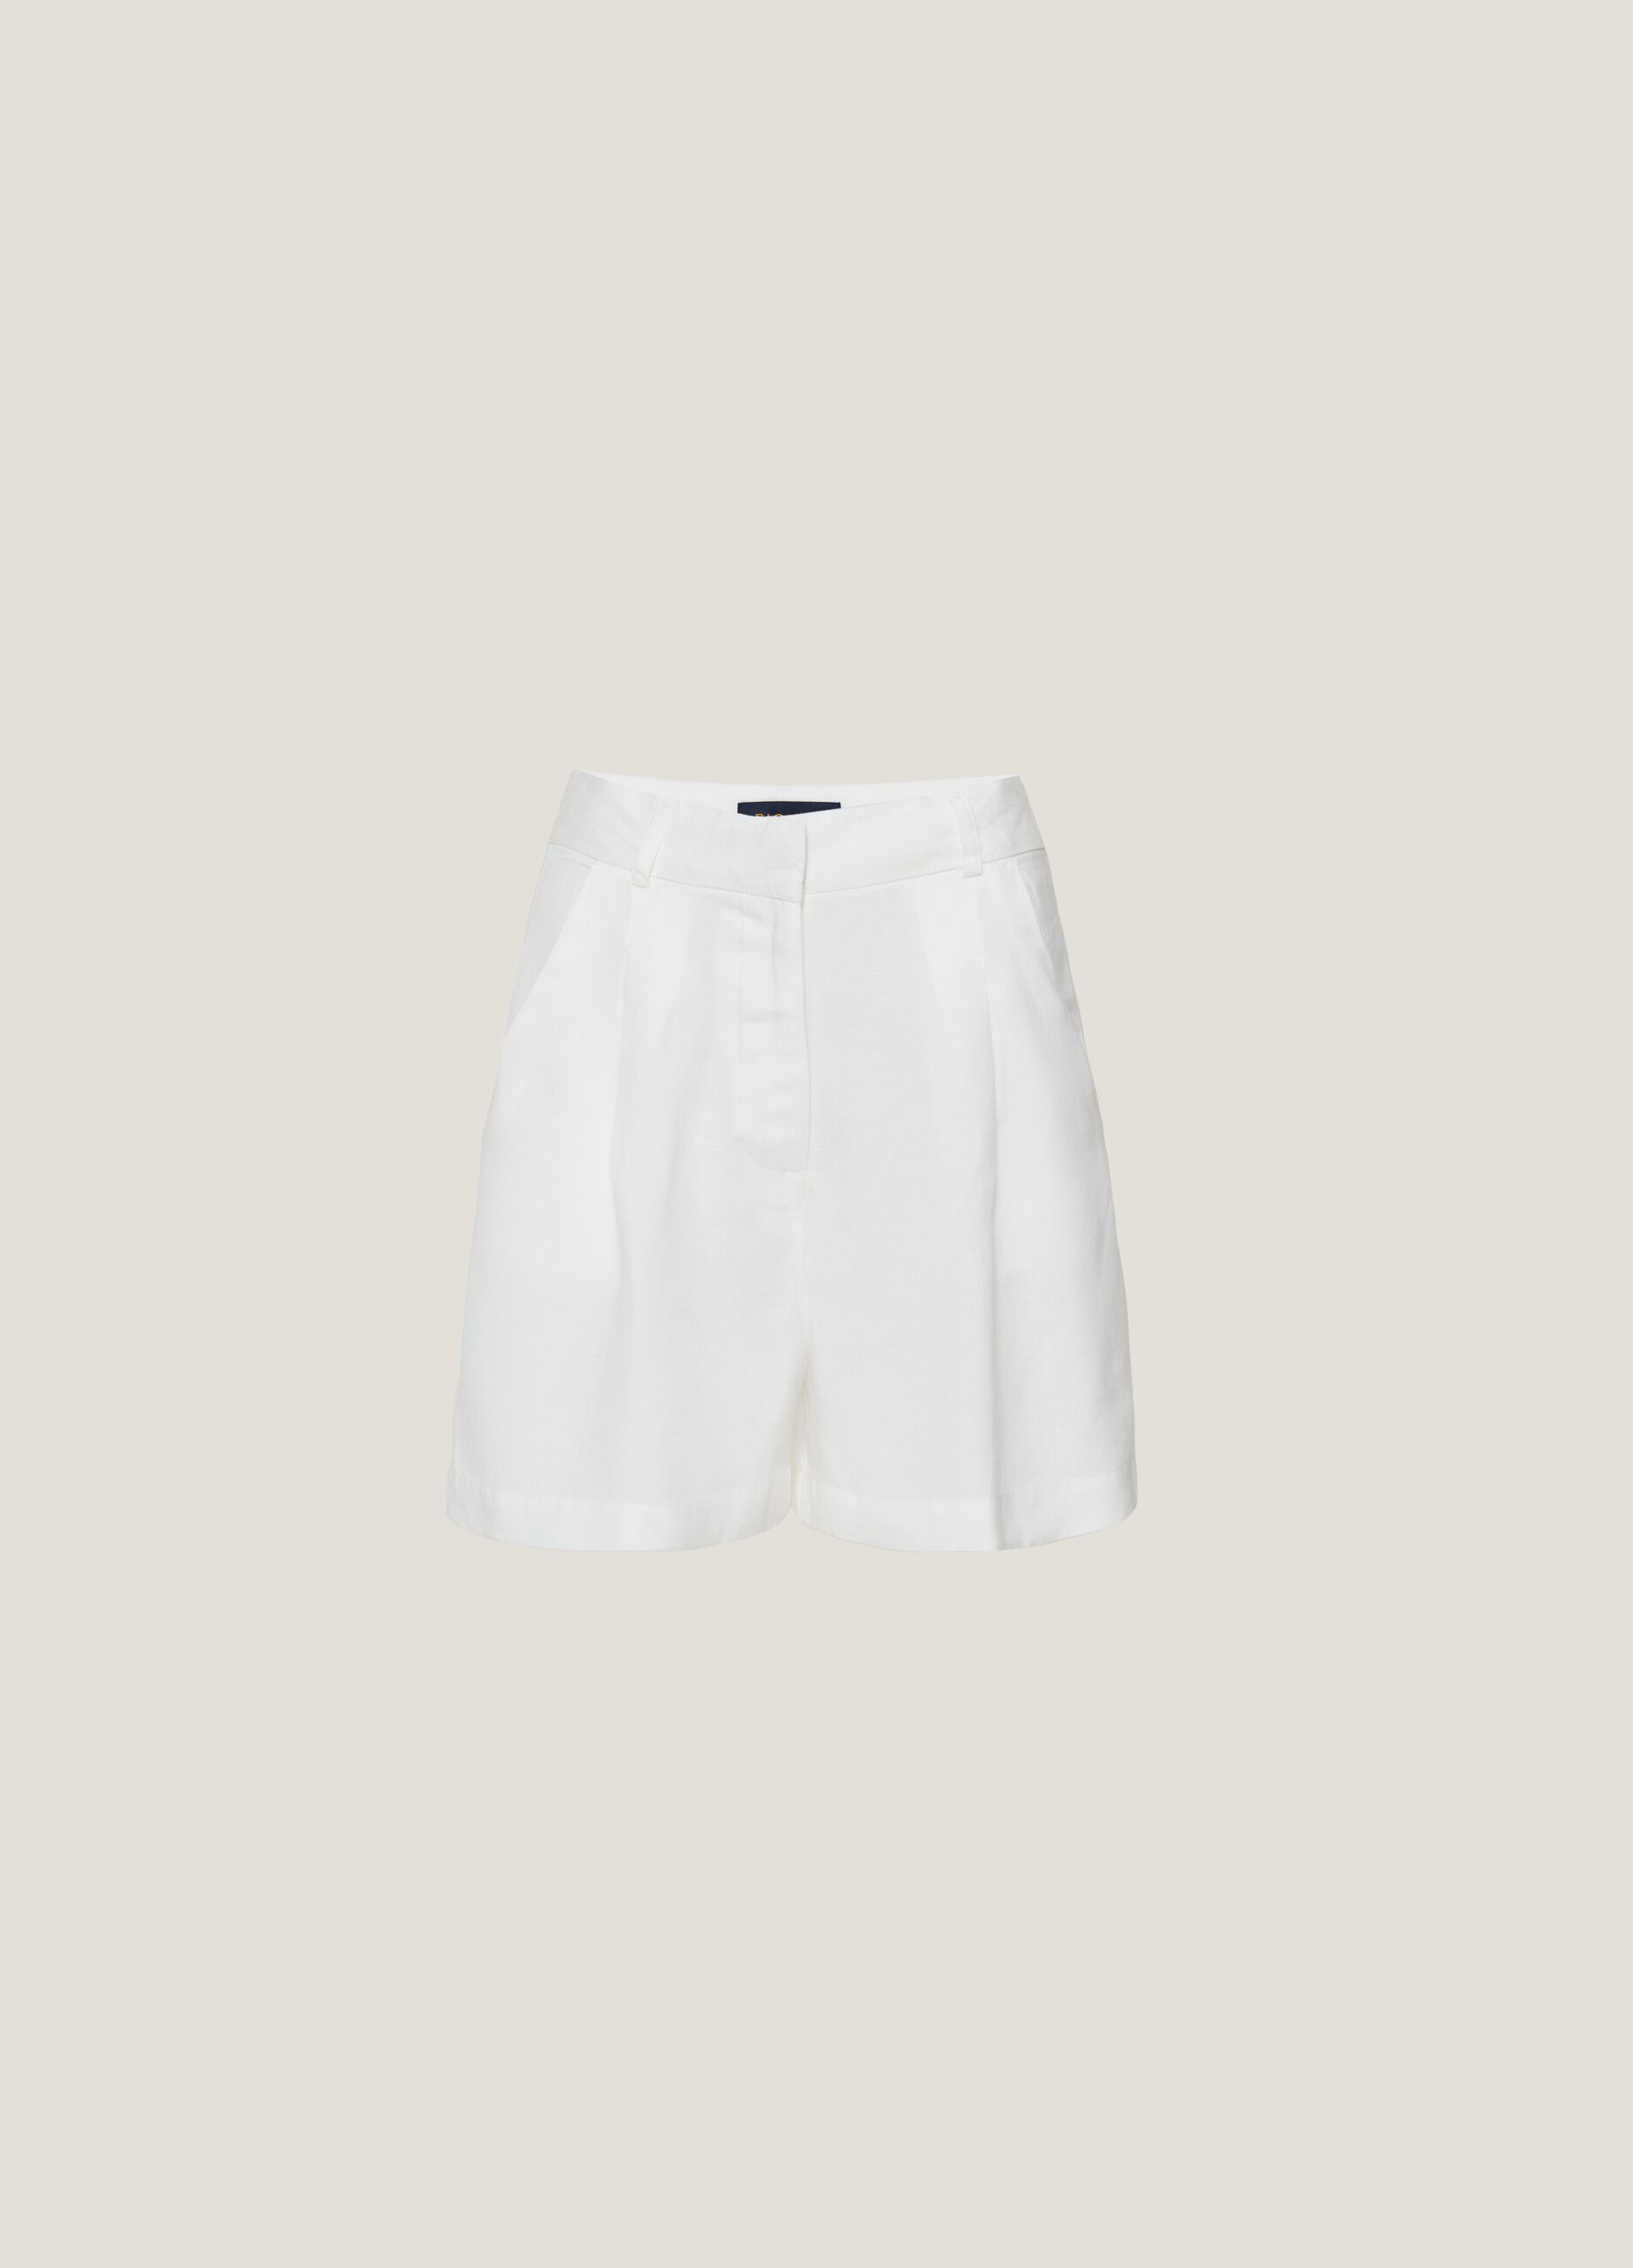 Linen and viscose shorts with darts